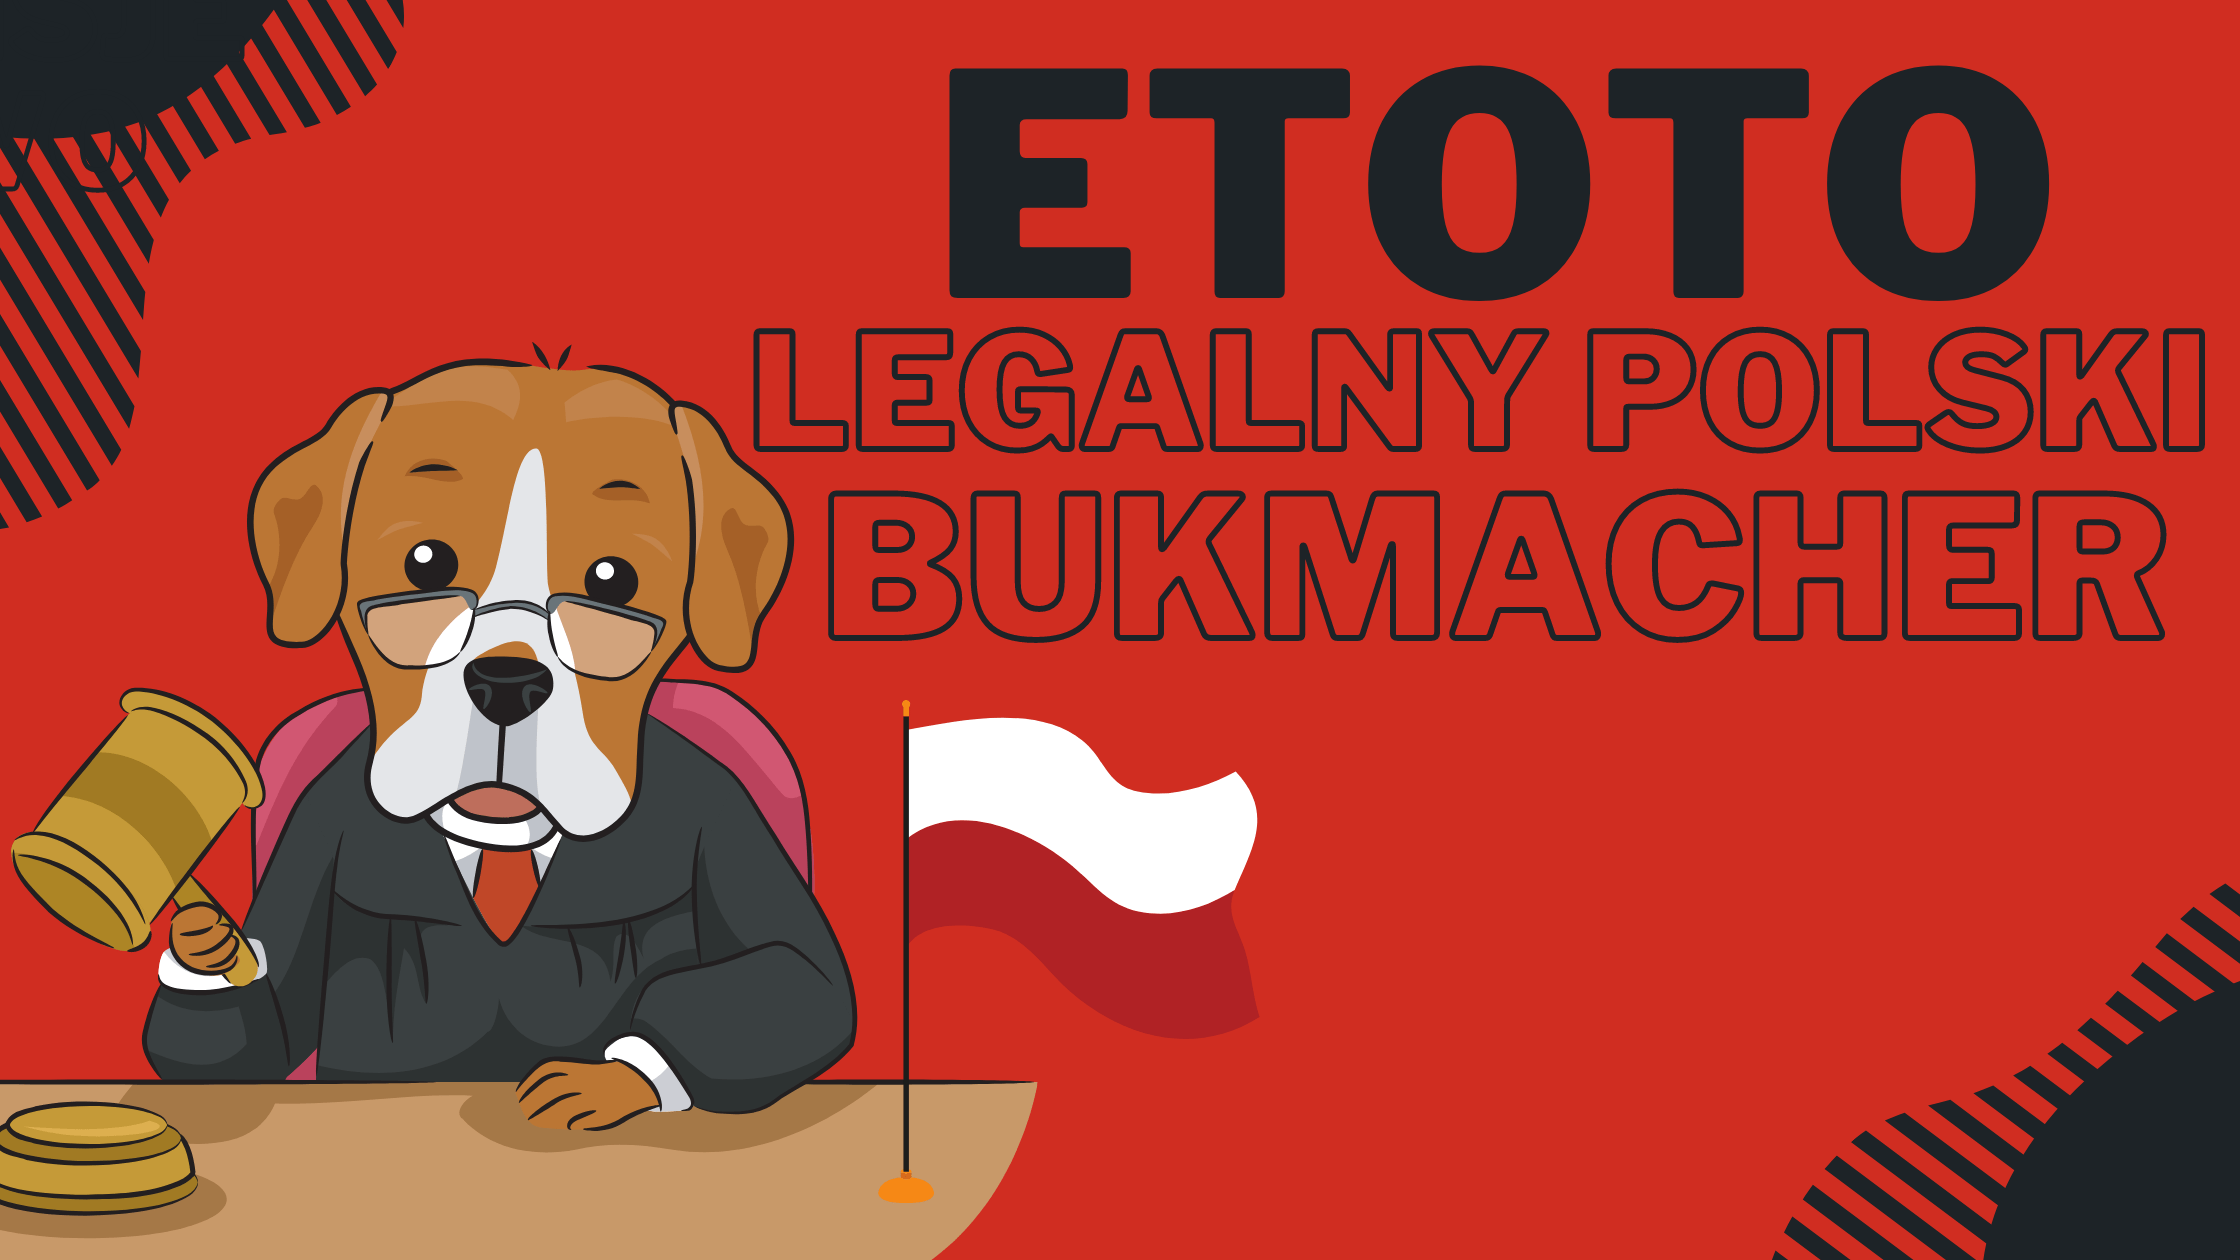 Etoto legalny polski bukmacher z licencją 